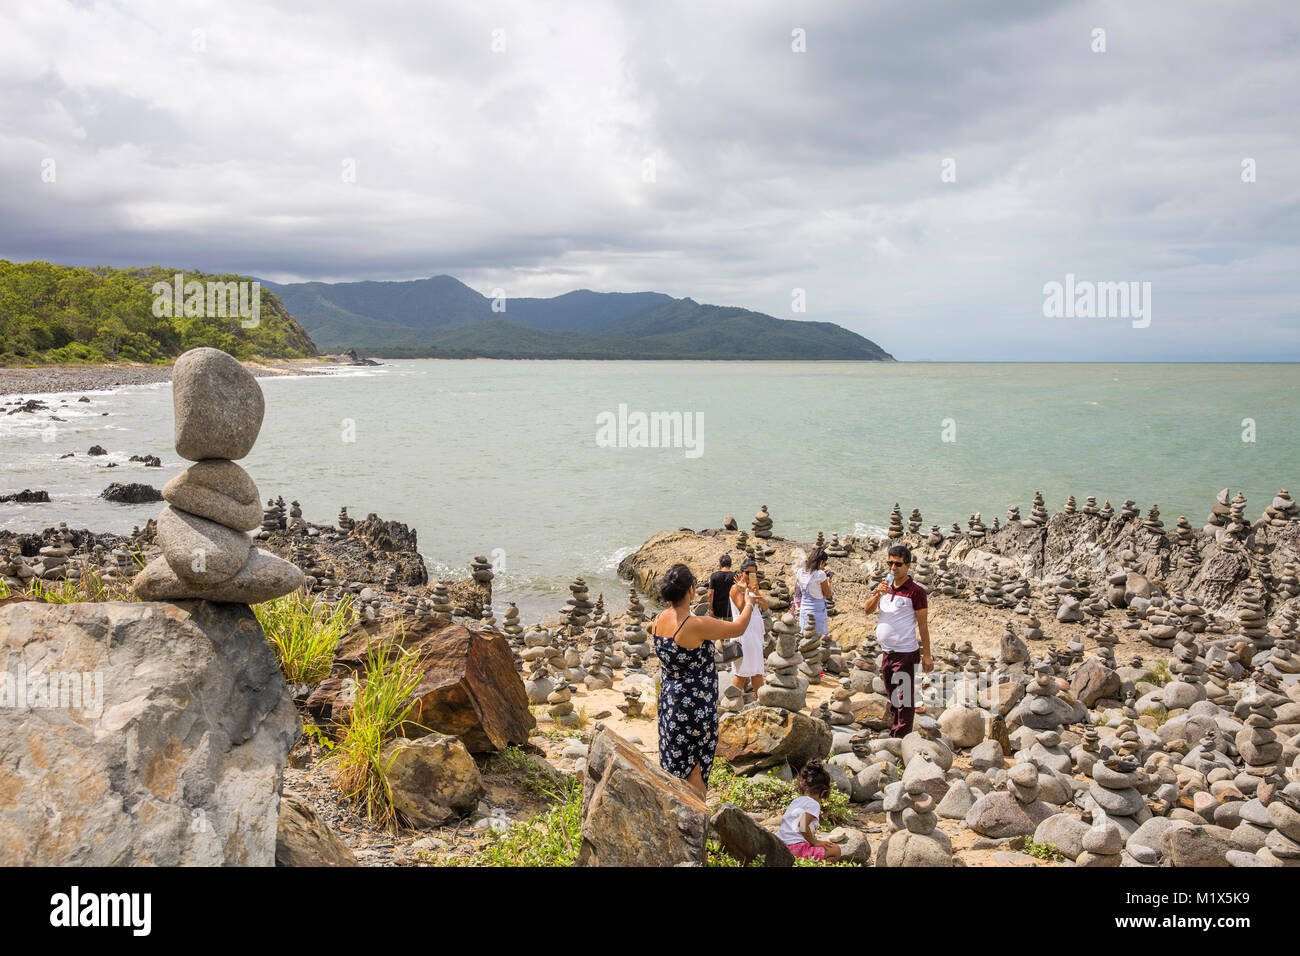 Steine gestapelt in einer Ausbildung an einem Strand zwischen Cairns und Port Douglas in Far North Queensland, Australien Stockfoto